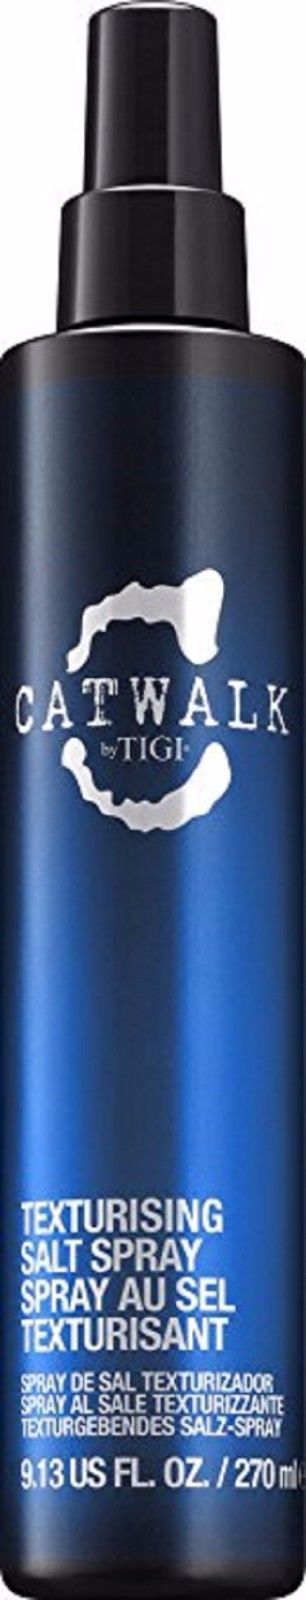 Tigi catwalk texturizing salt spray спрей морская соль 270мл